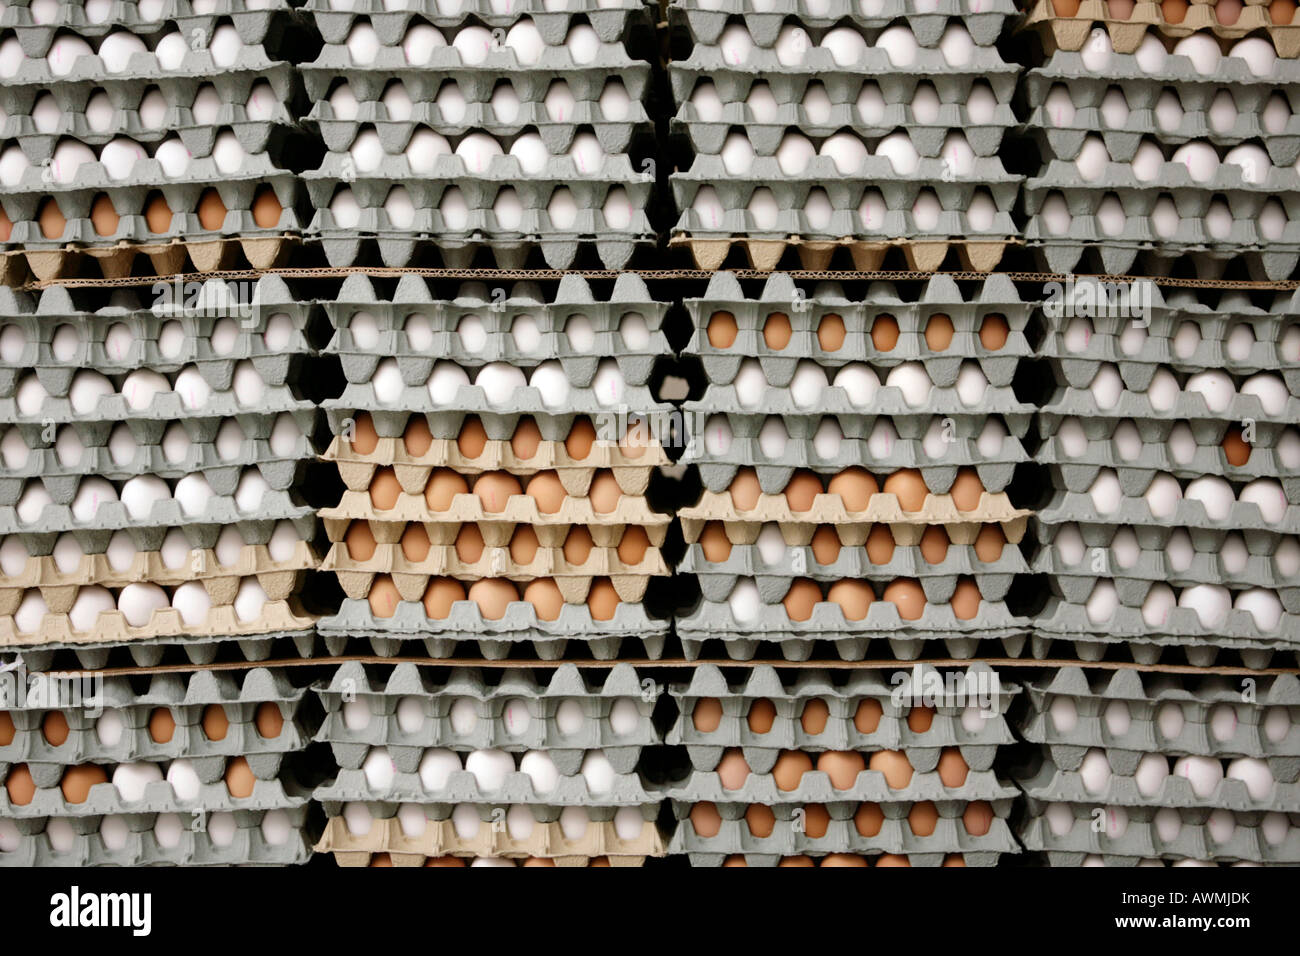 Eierkartons mit Eiern Stockfoto